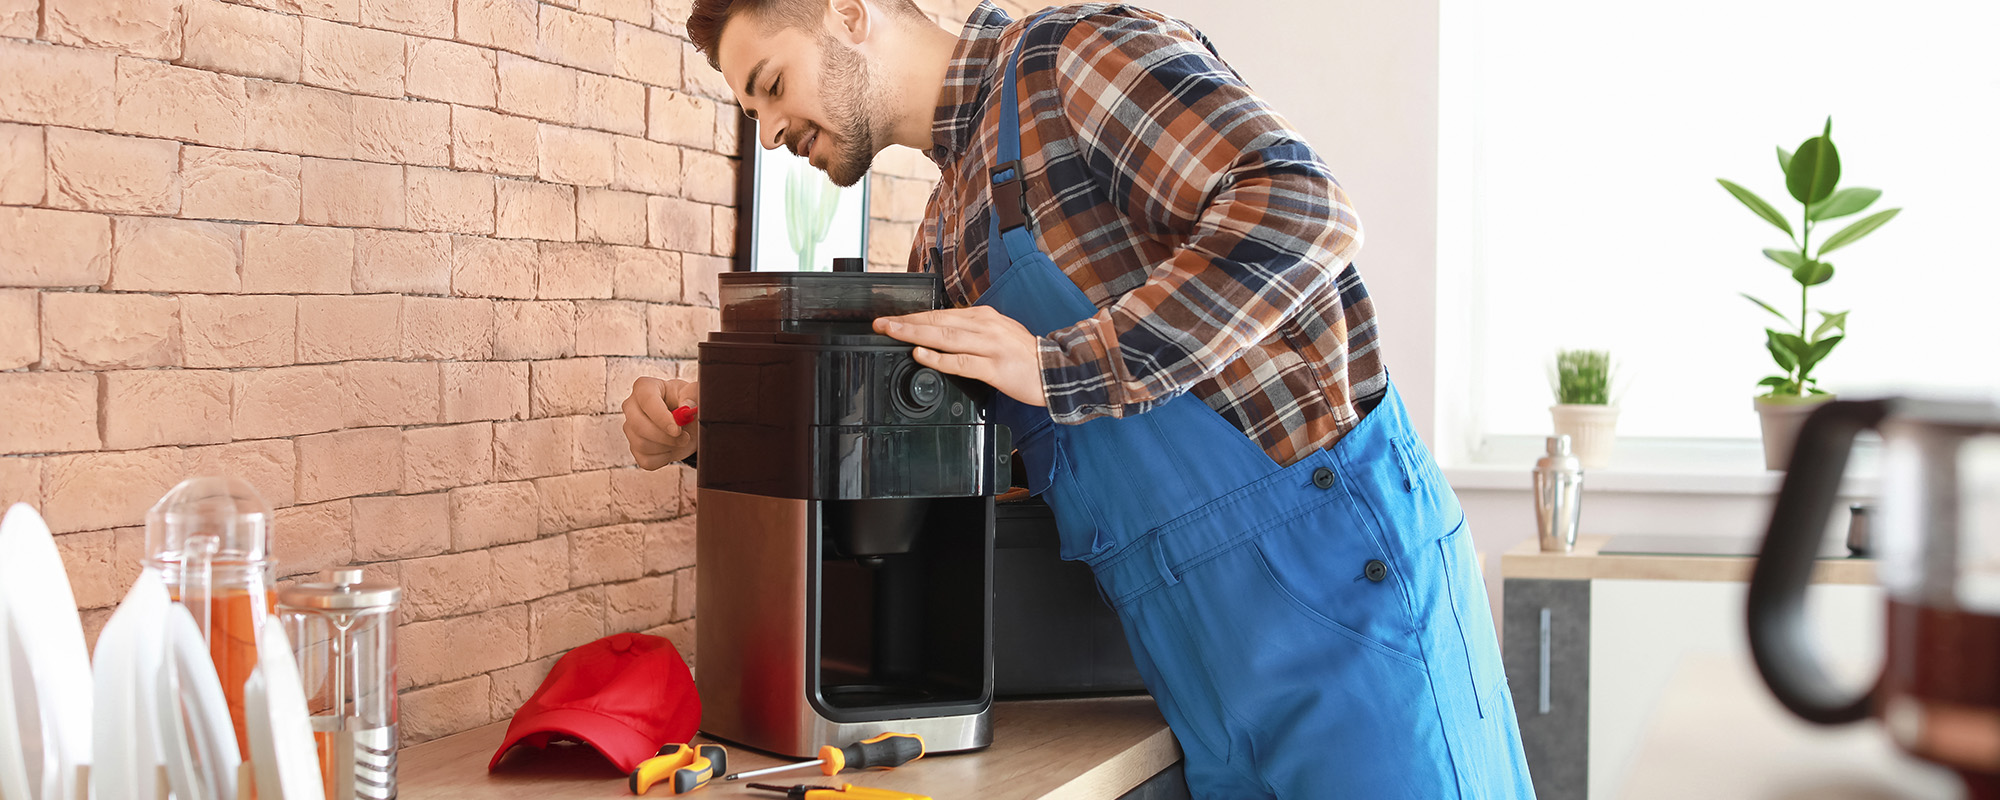 man repairing coffee machine in kitchen